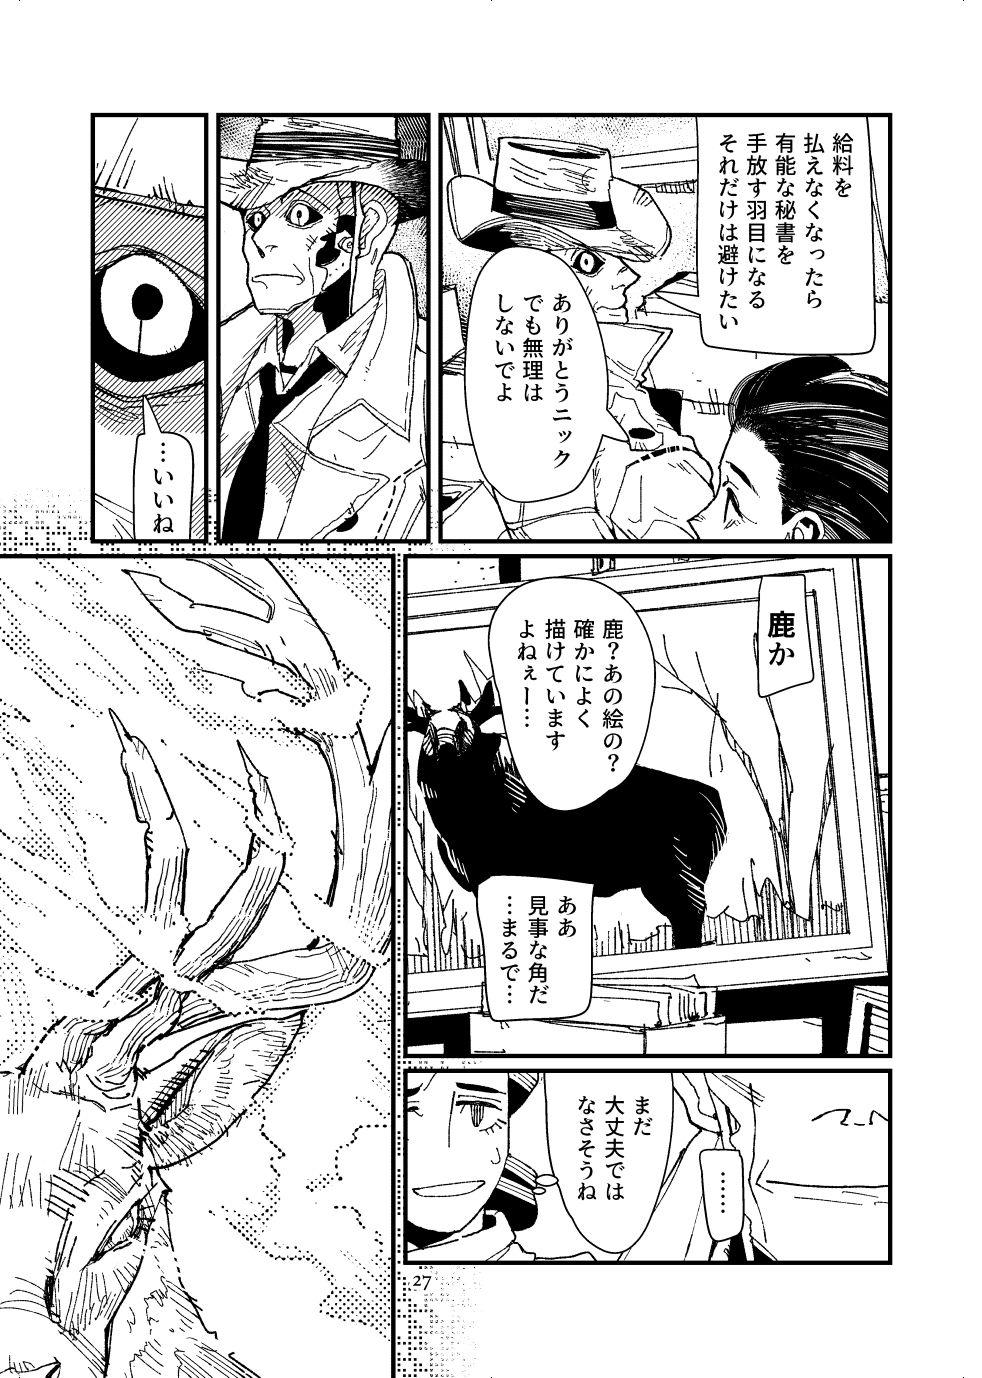 [Tanokura] FO4 [R18] Dimaniku Manga 26